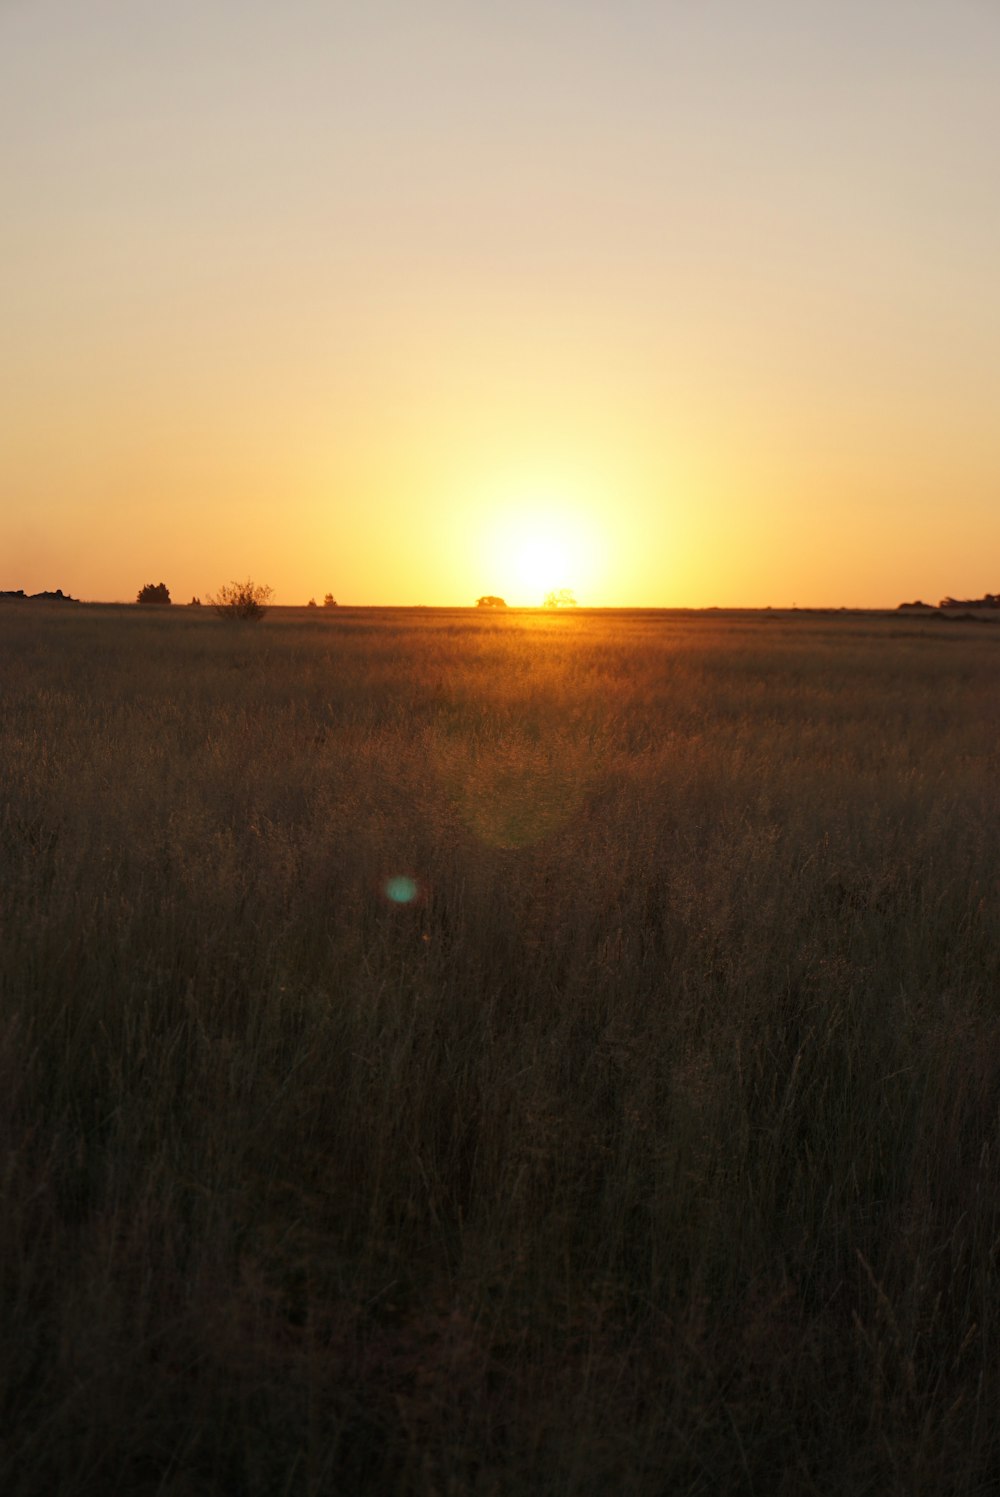 grass field during golden hour